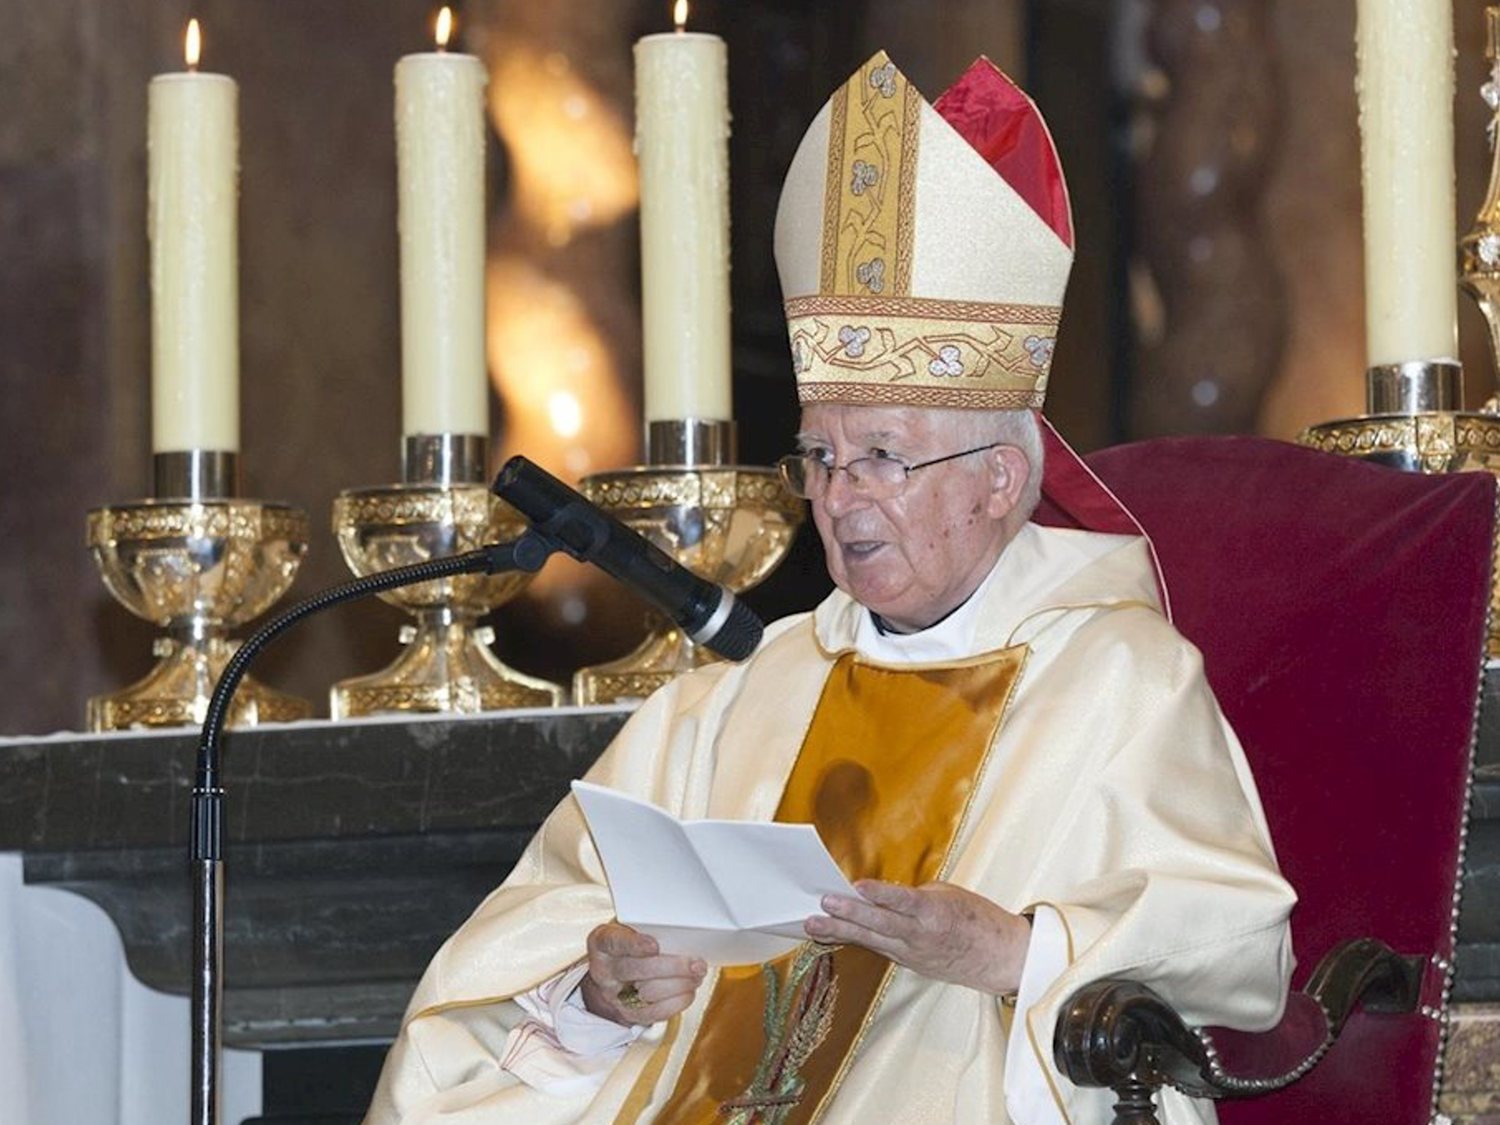 El cardenal Cañizares duda de la ciencia frente al coronavirus: "La esperanza es Dios"